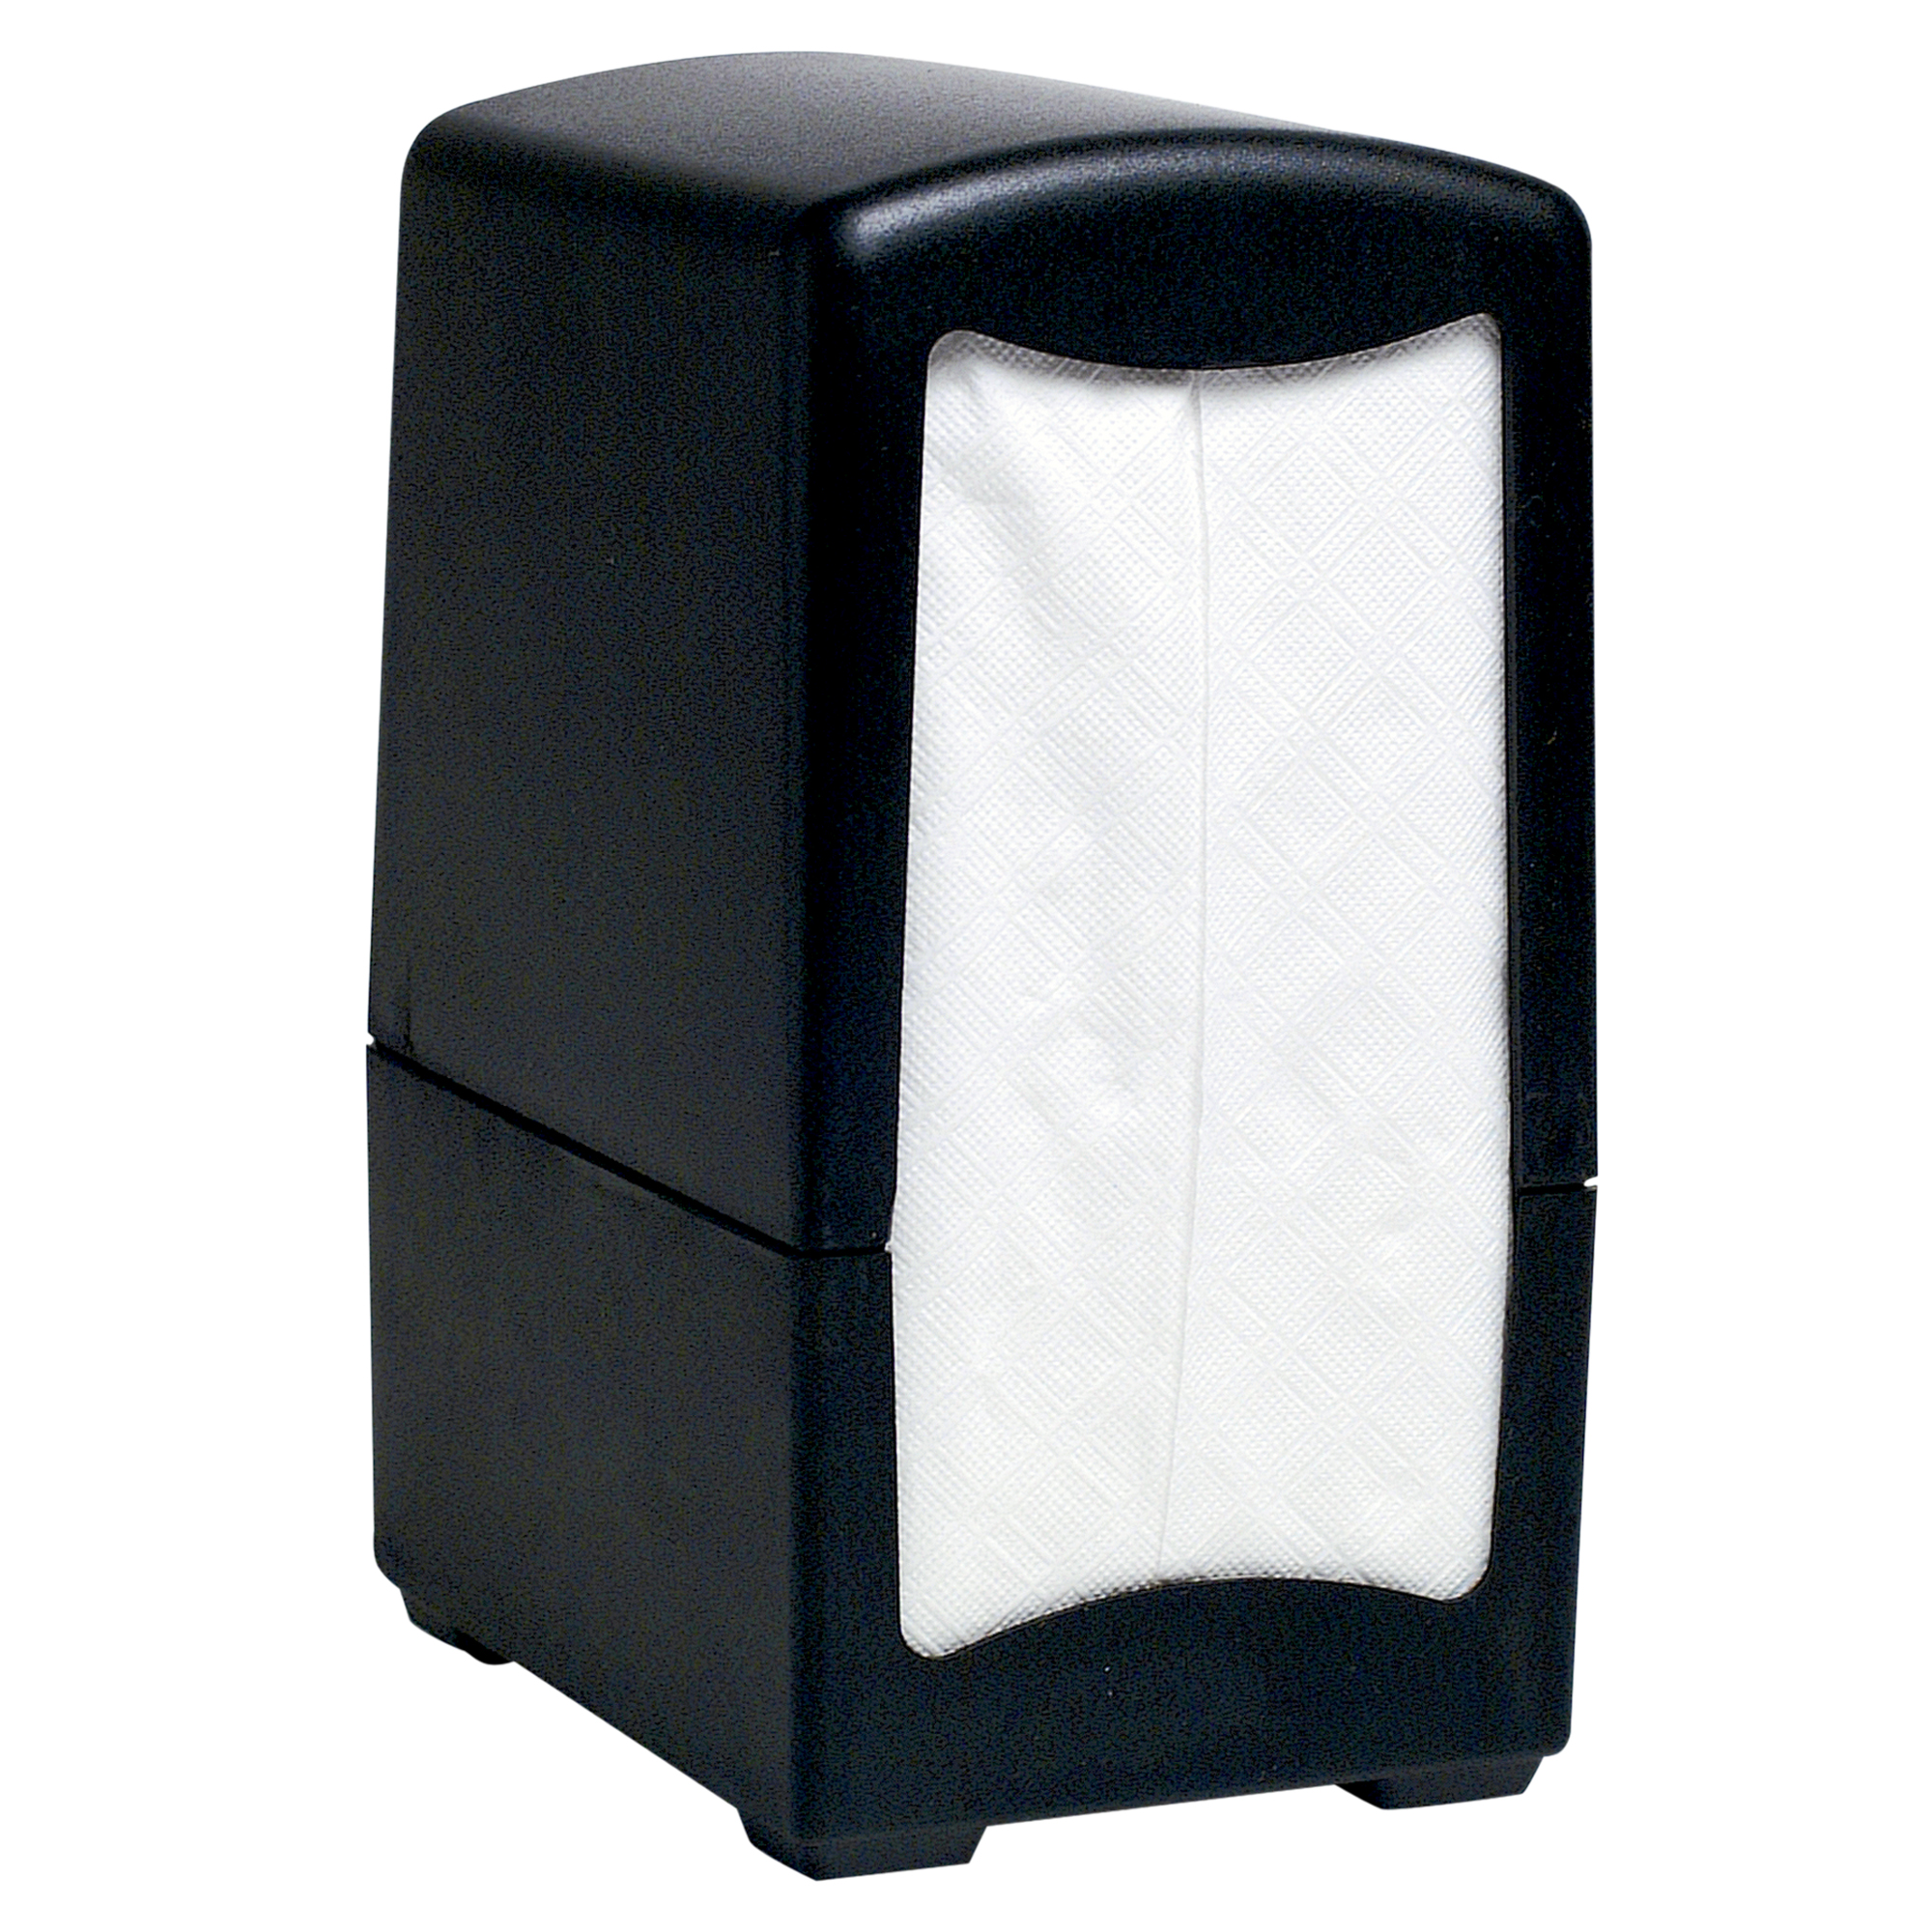 Picture of Full Fold Dispenser Napkins, 1-Ply, 13 x 12, White, 375/Pack, 16 Packs/Carton